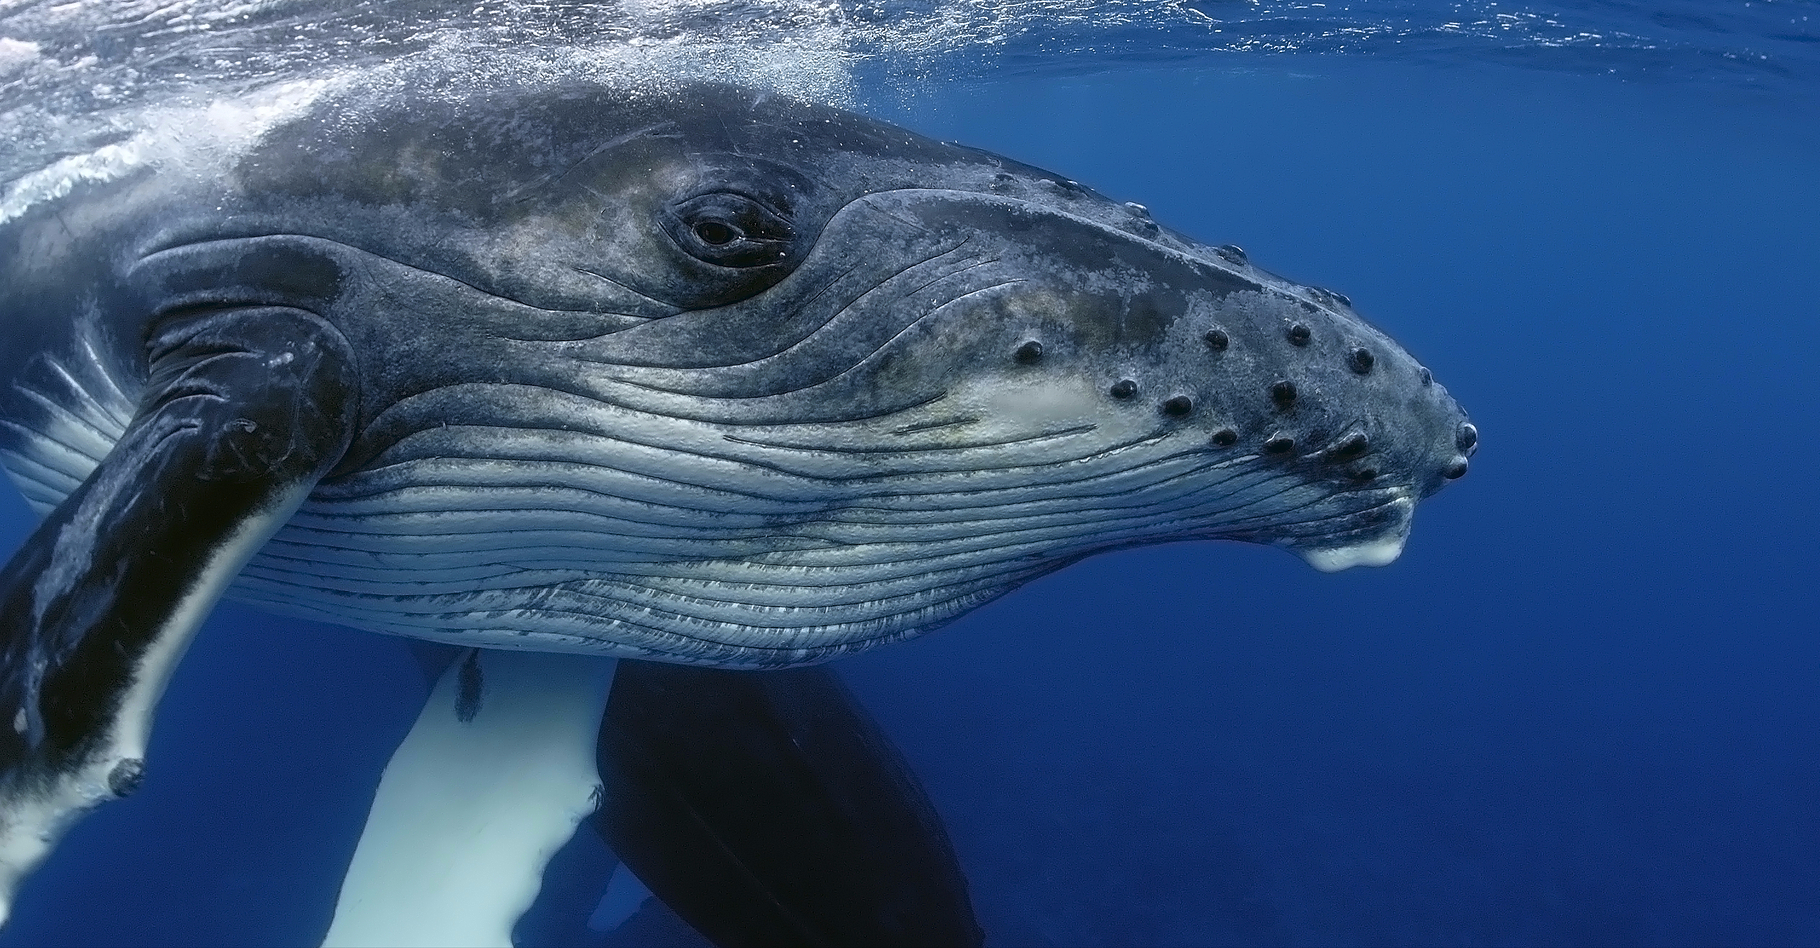 Les baleines à bosse ont un chant structuré, propre à chaque région du monde où elles se reproduisent. Par ailleurs, leur chant évolue à mesure que la baleine vieillit. © Yann hubert, Shutterstock